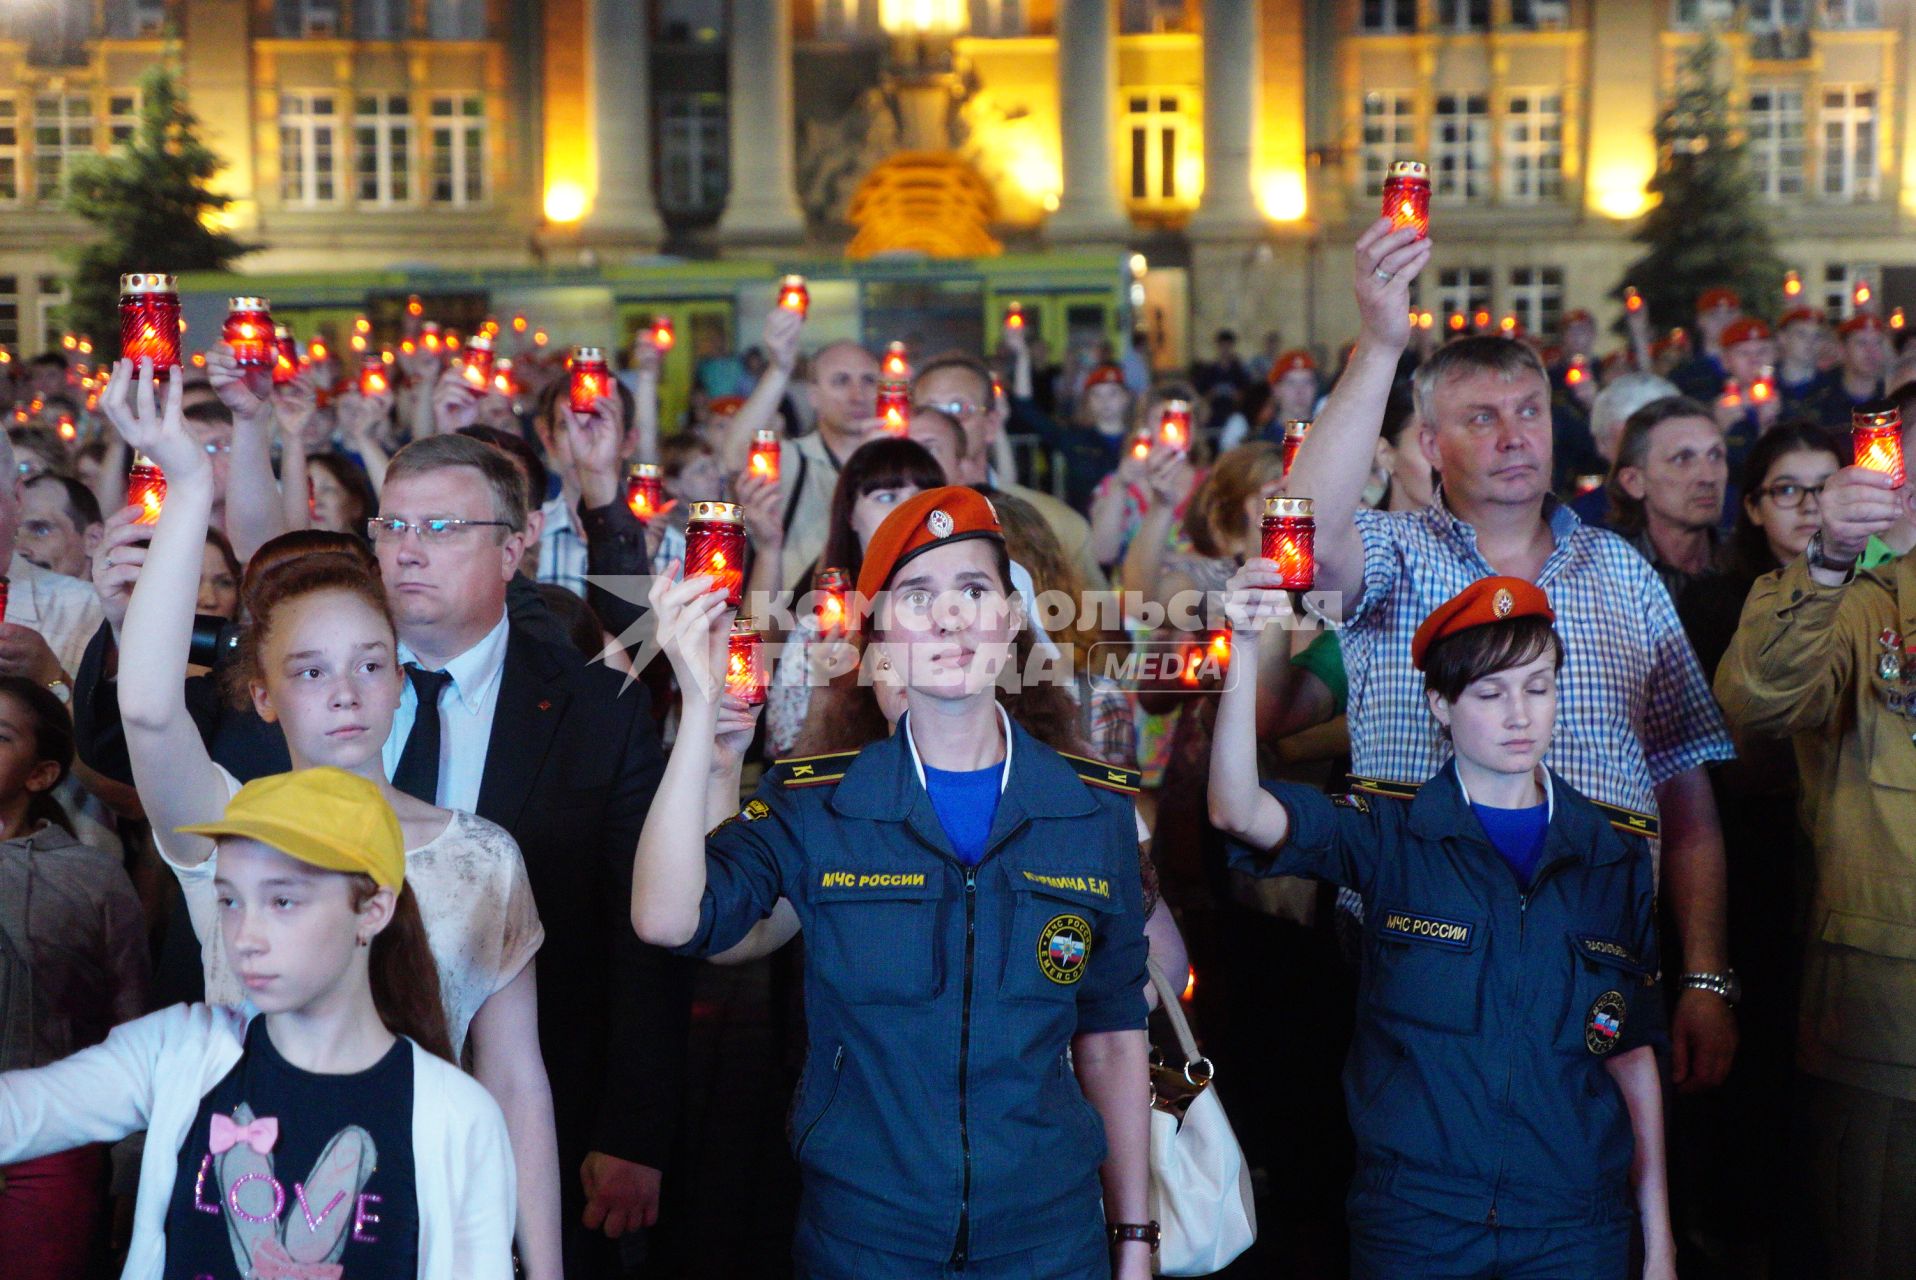 Екатеринбург. Участники всероссийской акции \'Свеча памяти\' в день начала Великой Отечественной войны, стоят с свечами на площади 1905 года